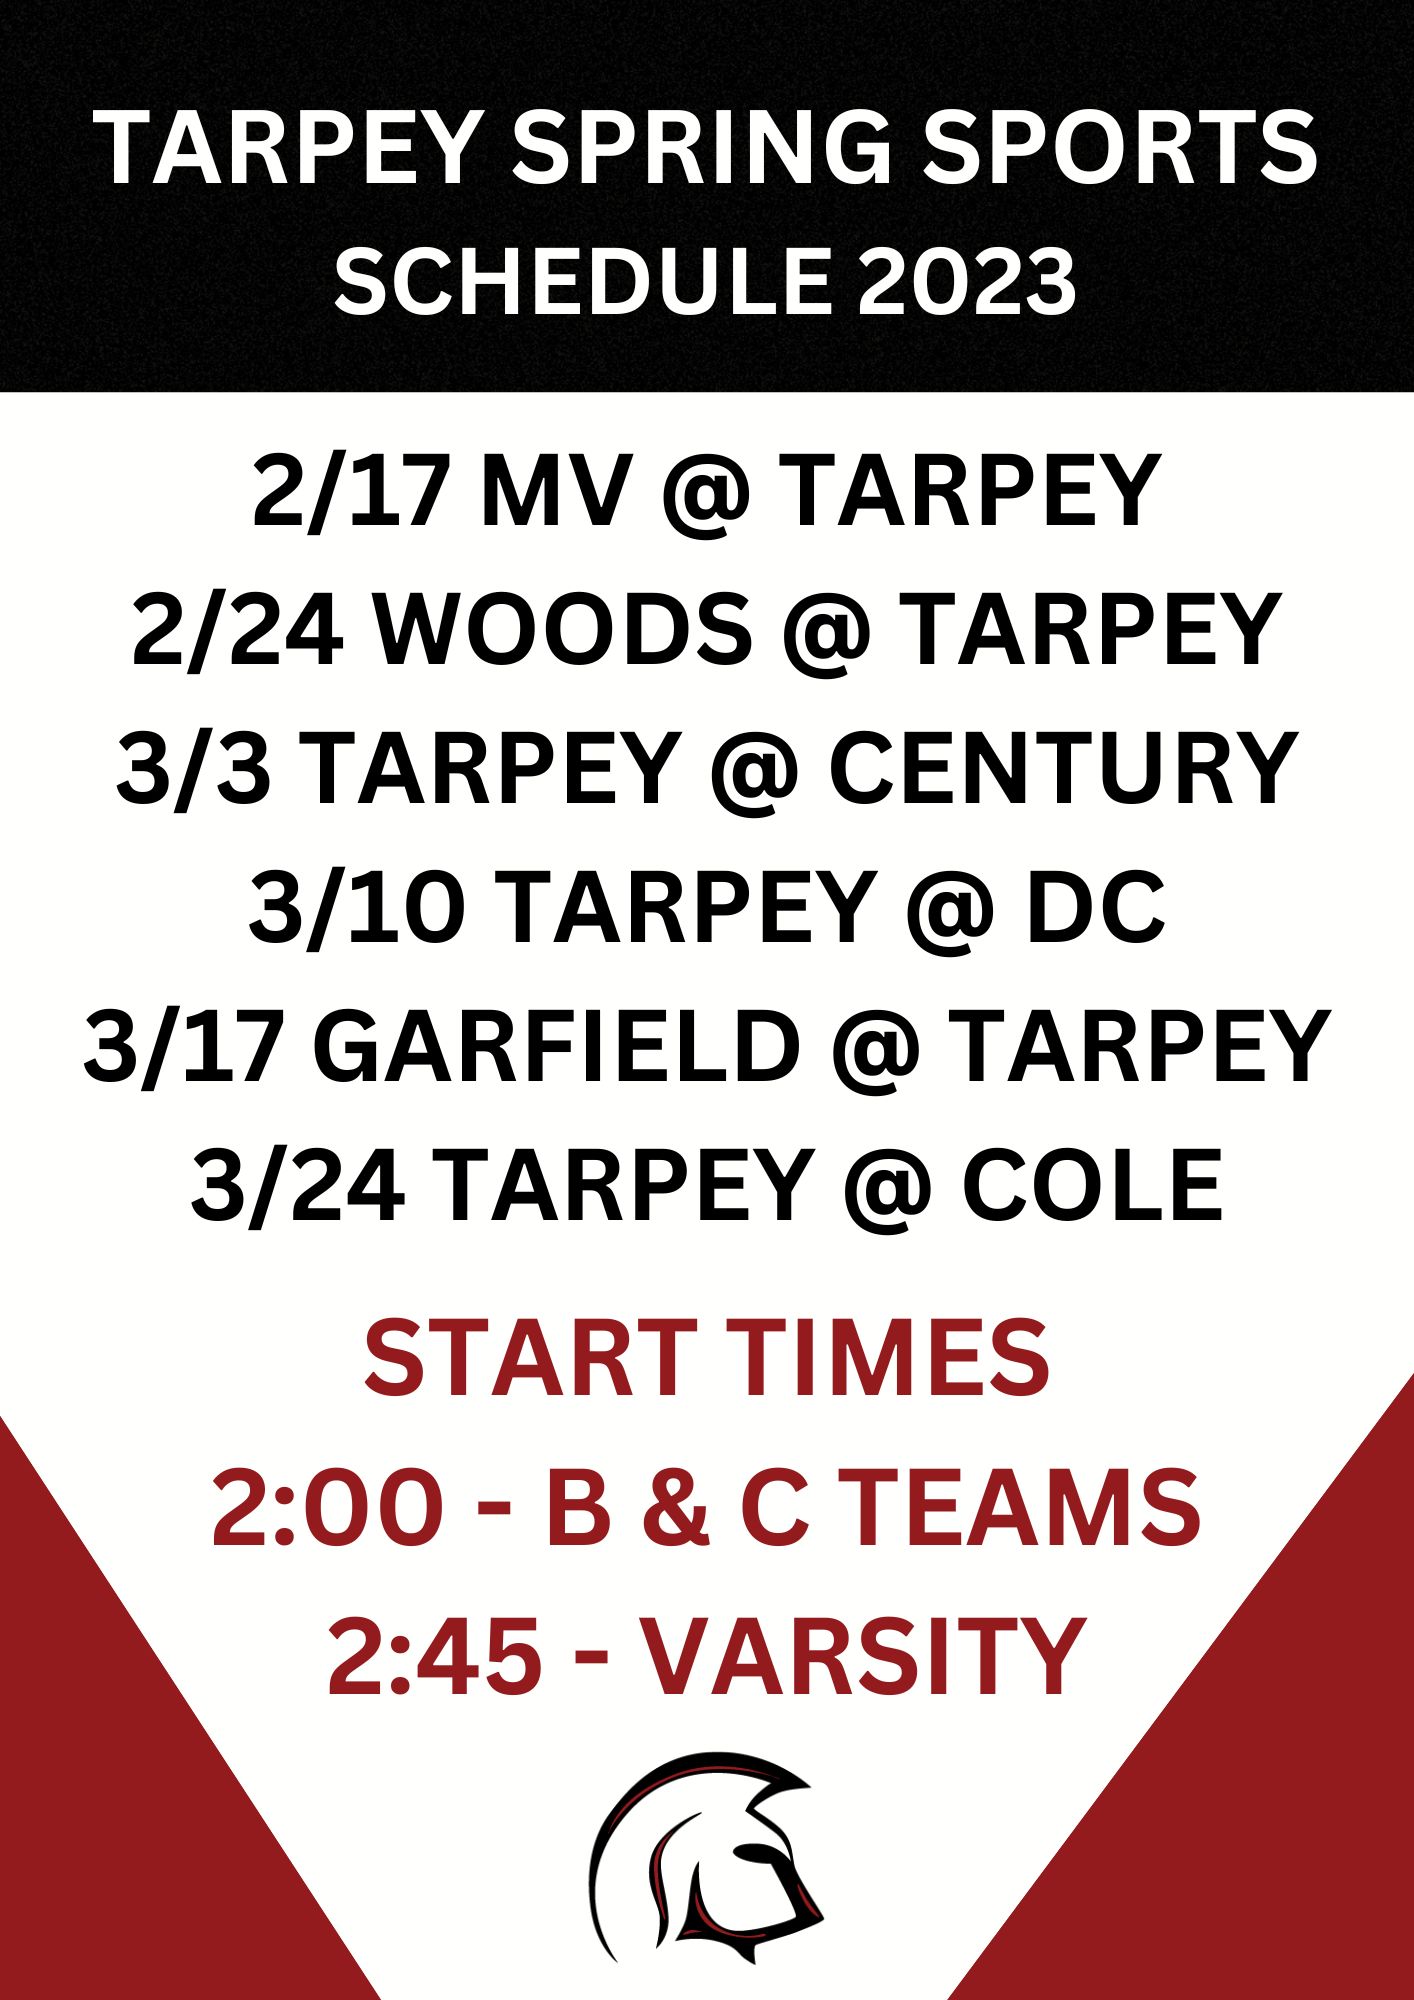 Tarpey Spring Sports Schedule 2023